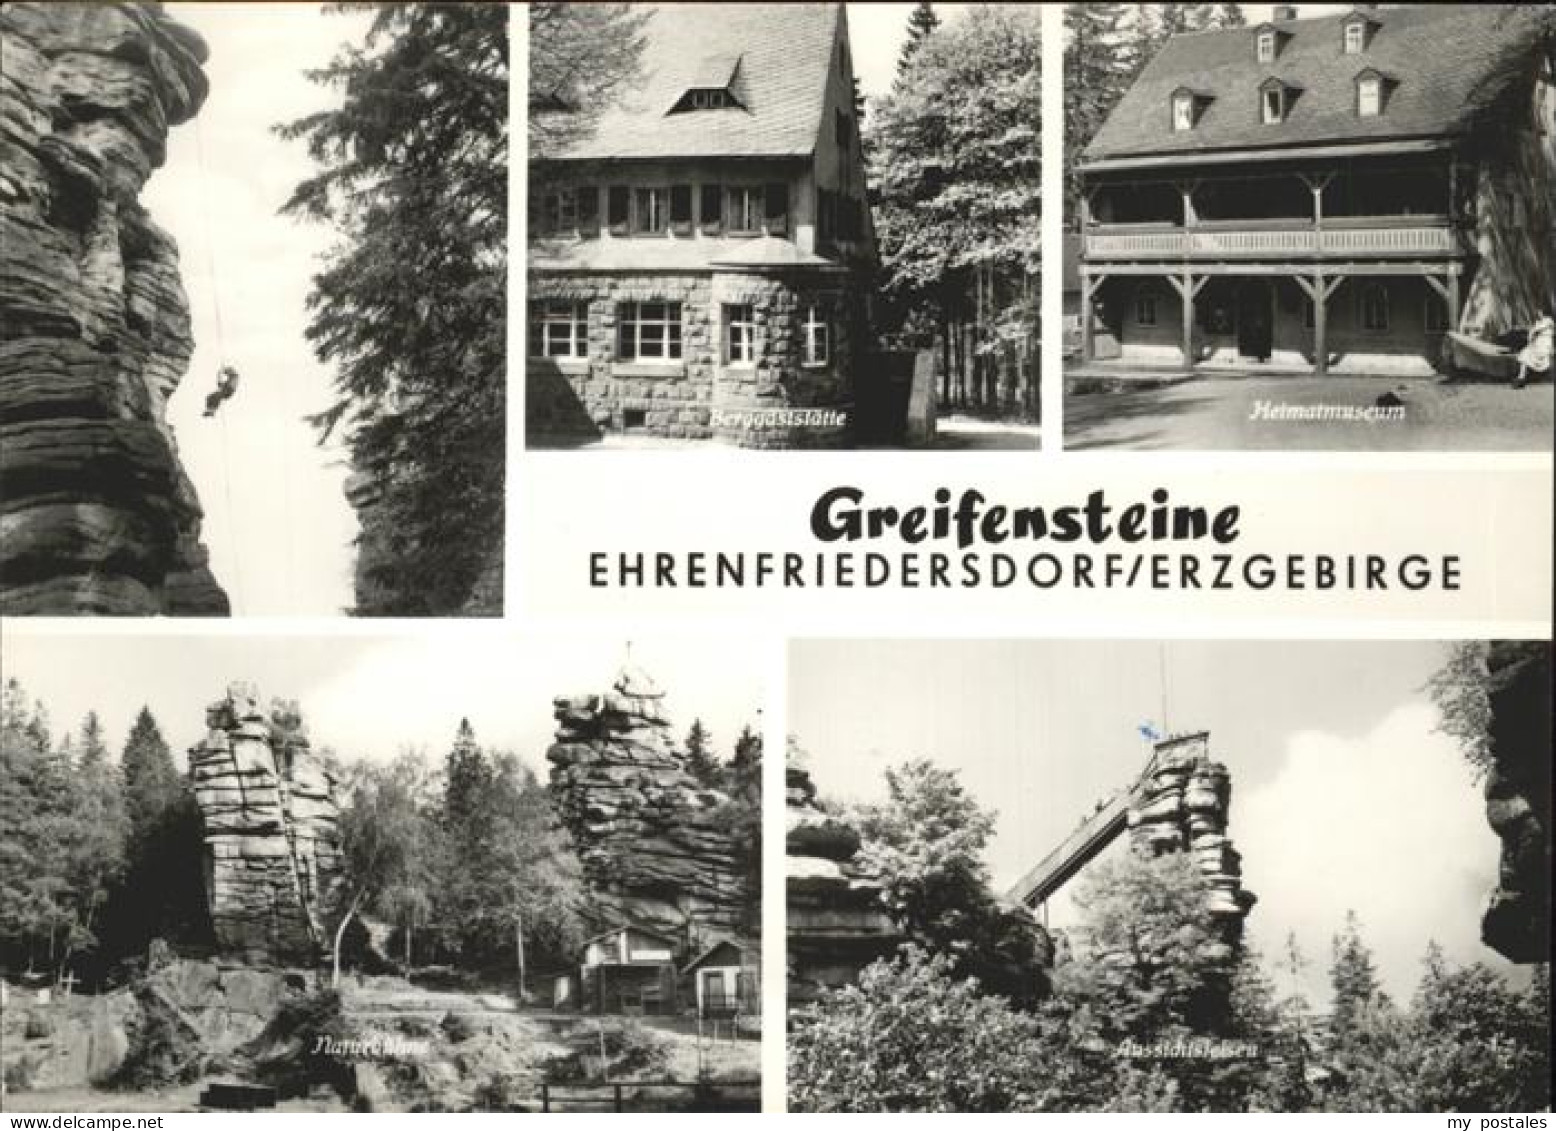 41258584 Ehrenfriedersdorf Erzgebirge Greifensteine Heimatmuseum Berggaststaette - Ehrenfriedersdorf